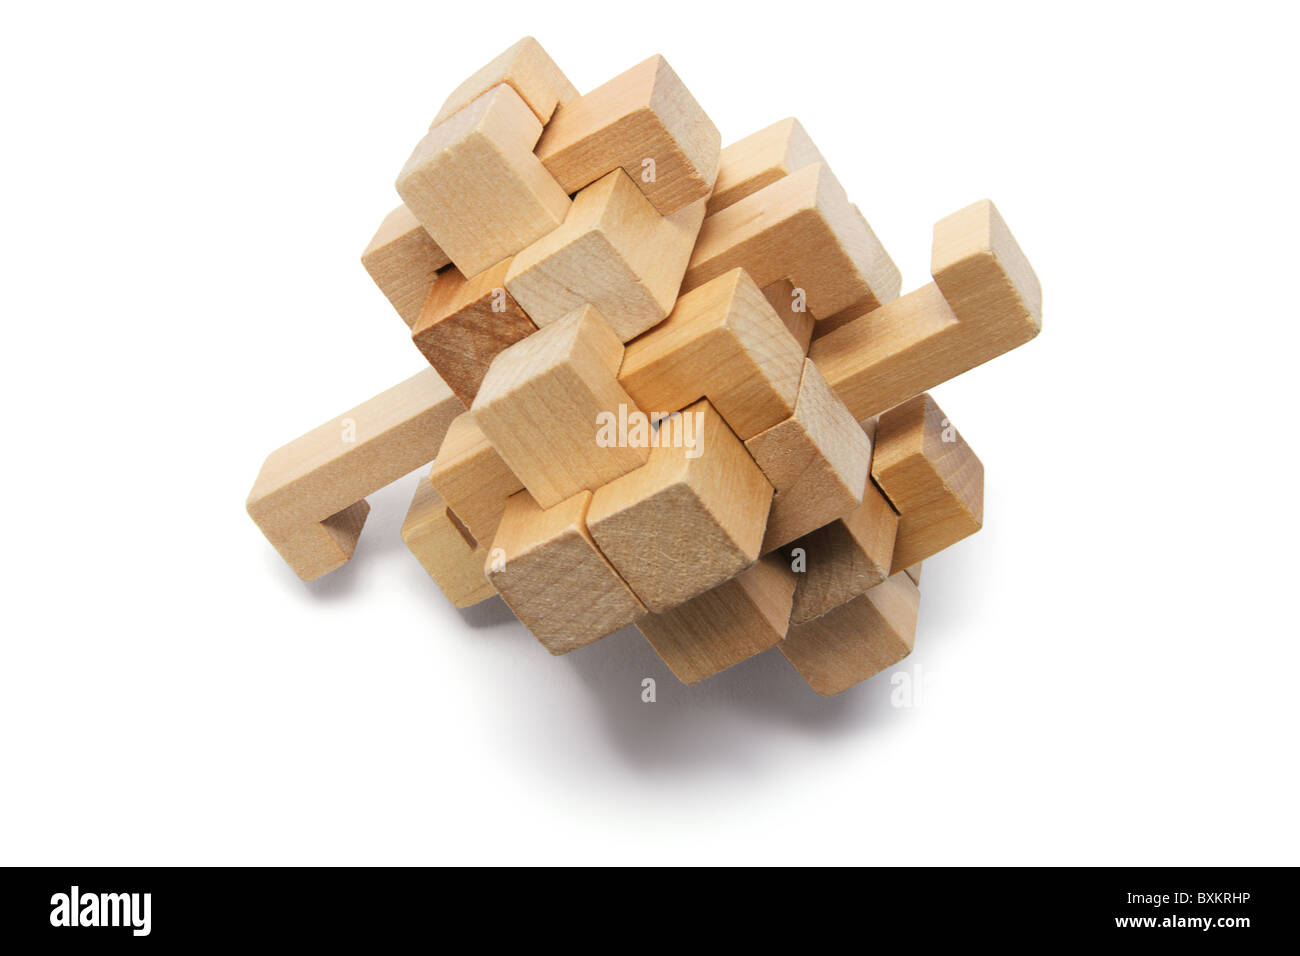 Rompecabezas de madera fotografías e imágenes alta resolución - Alamy